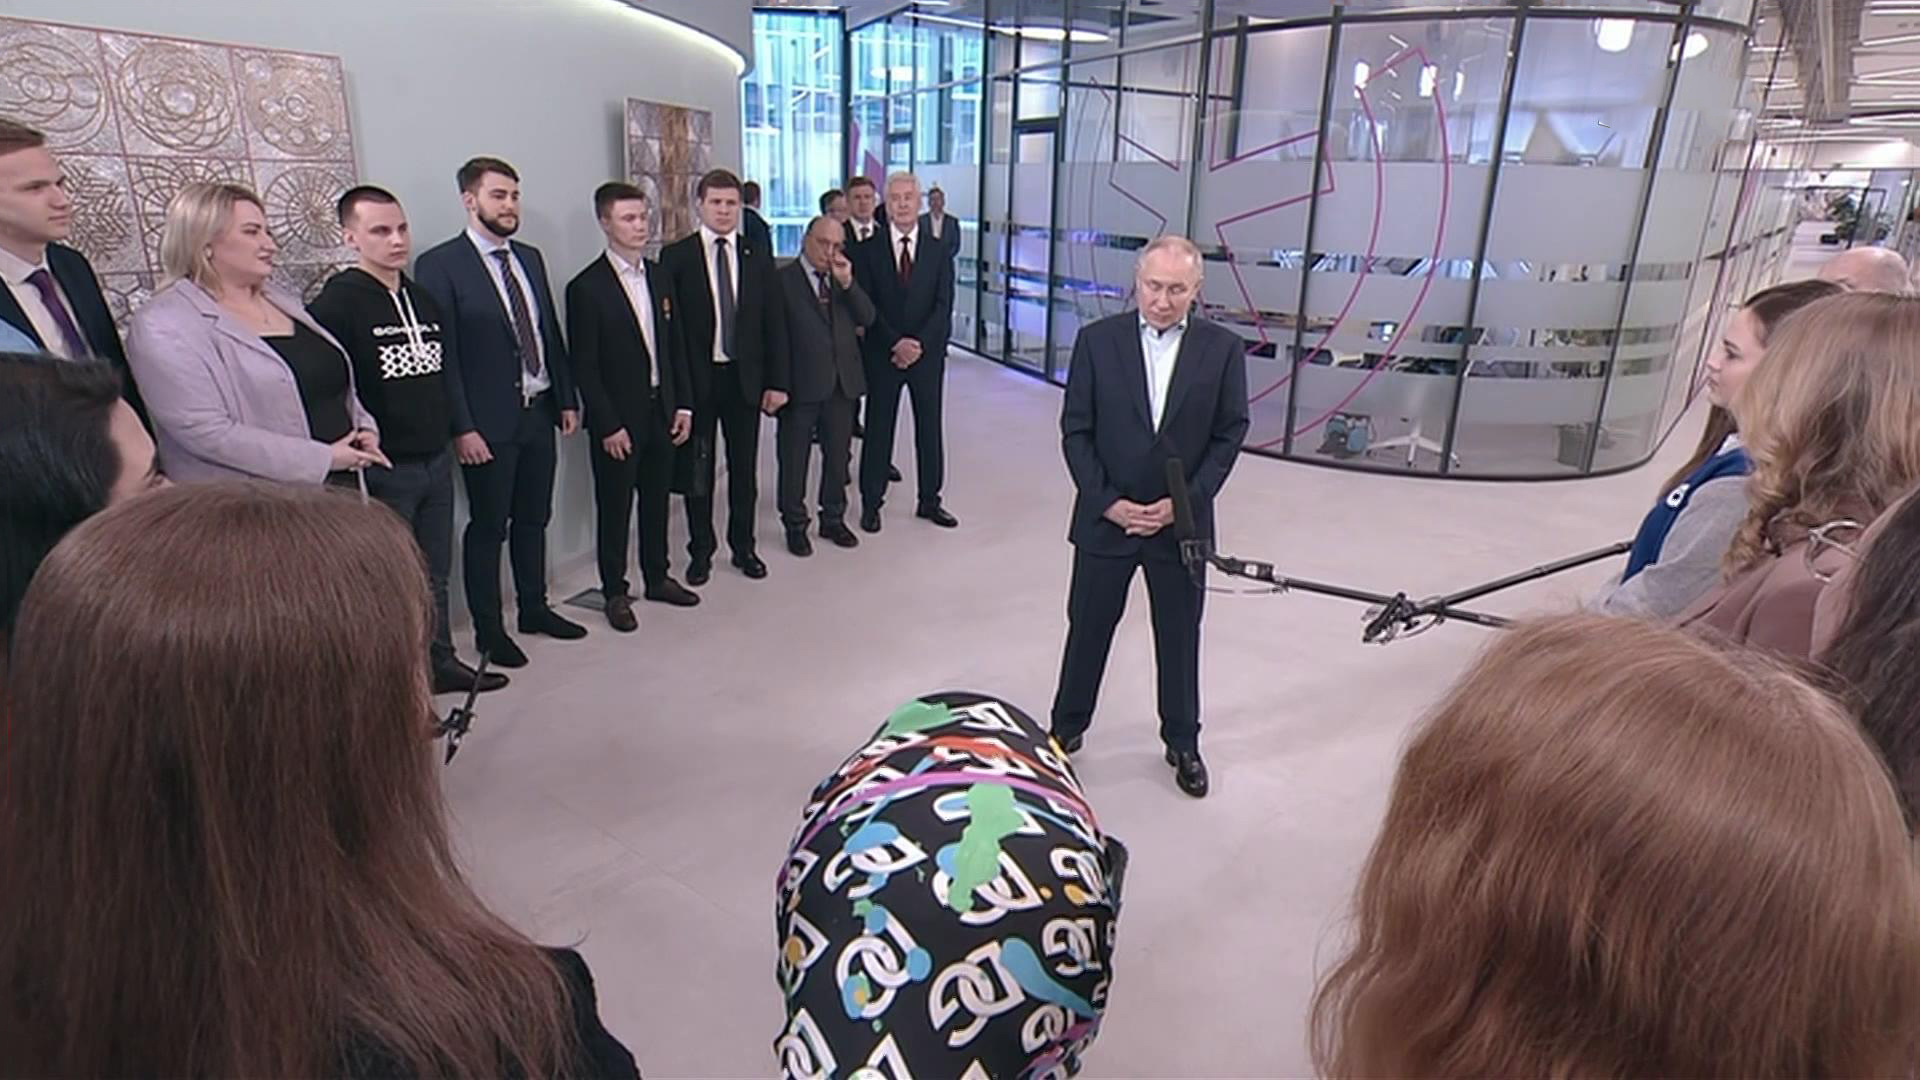 Путин на встрече со студентами